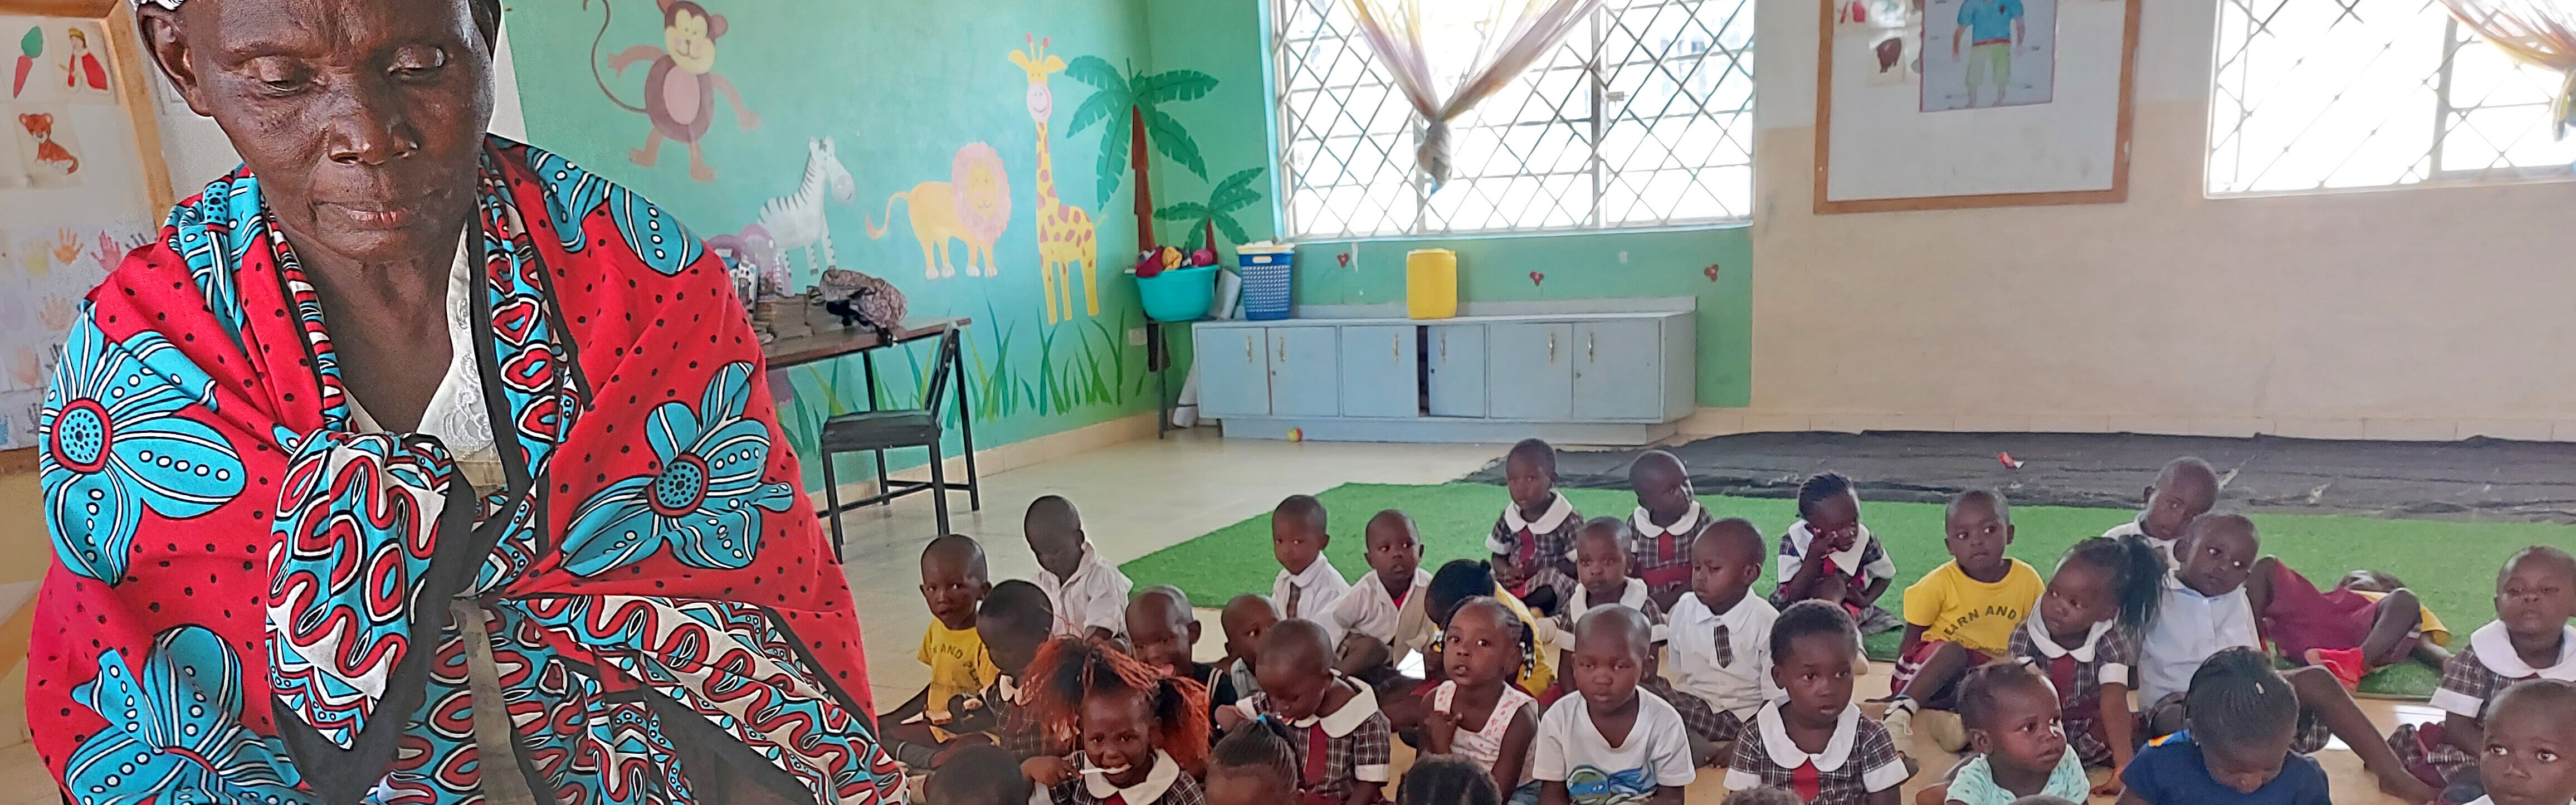 Hilfsprojekt für Kinder von TERRA TECH in einer Schule in Kenia